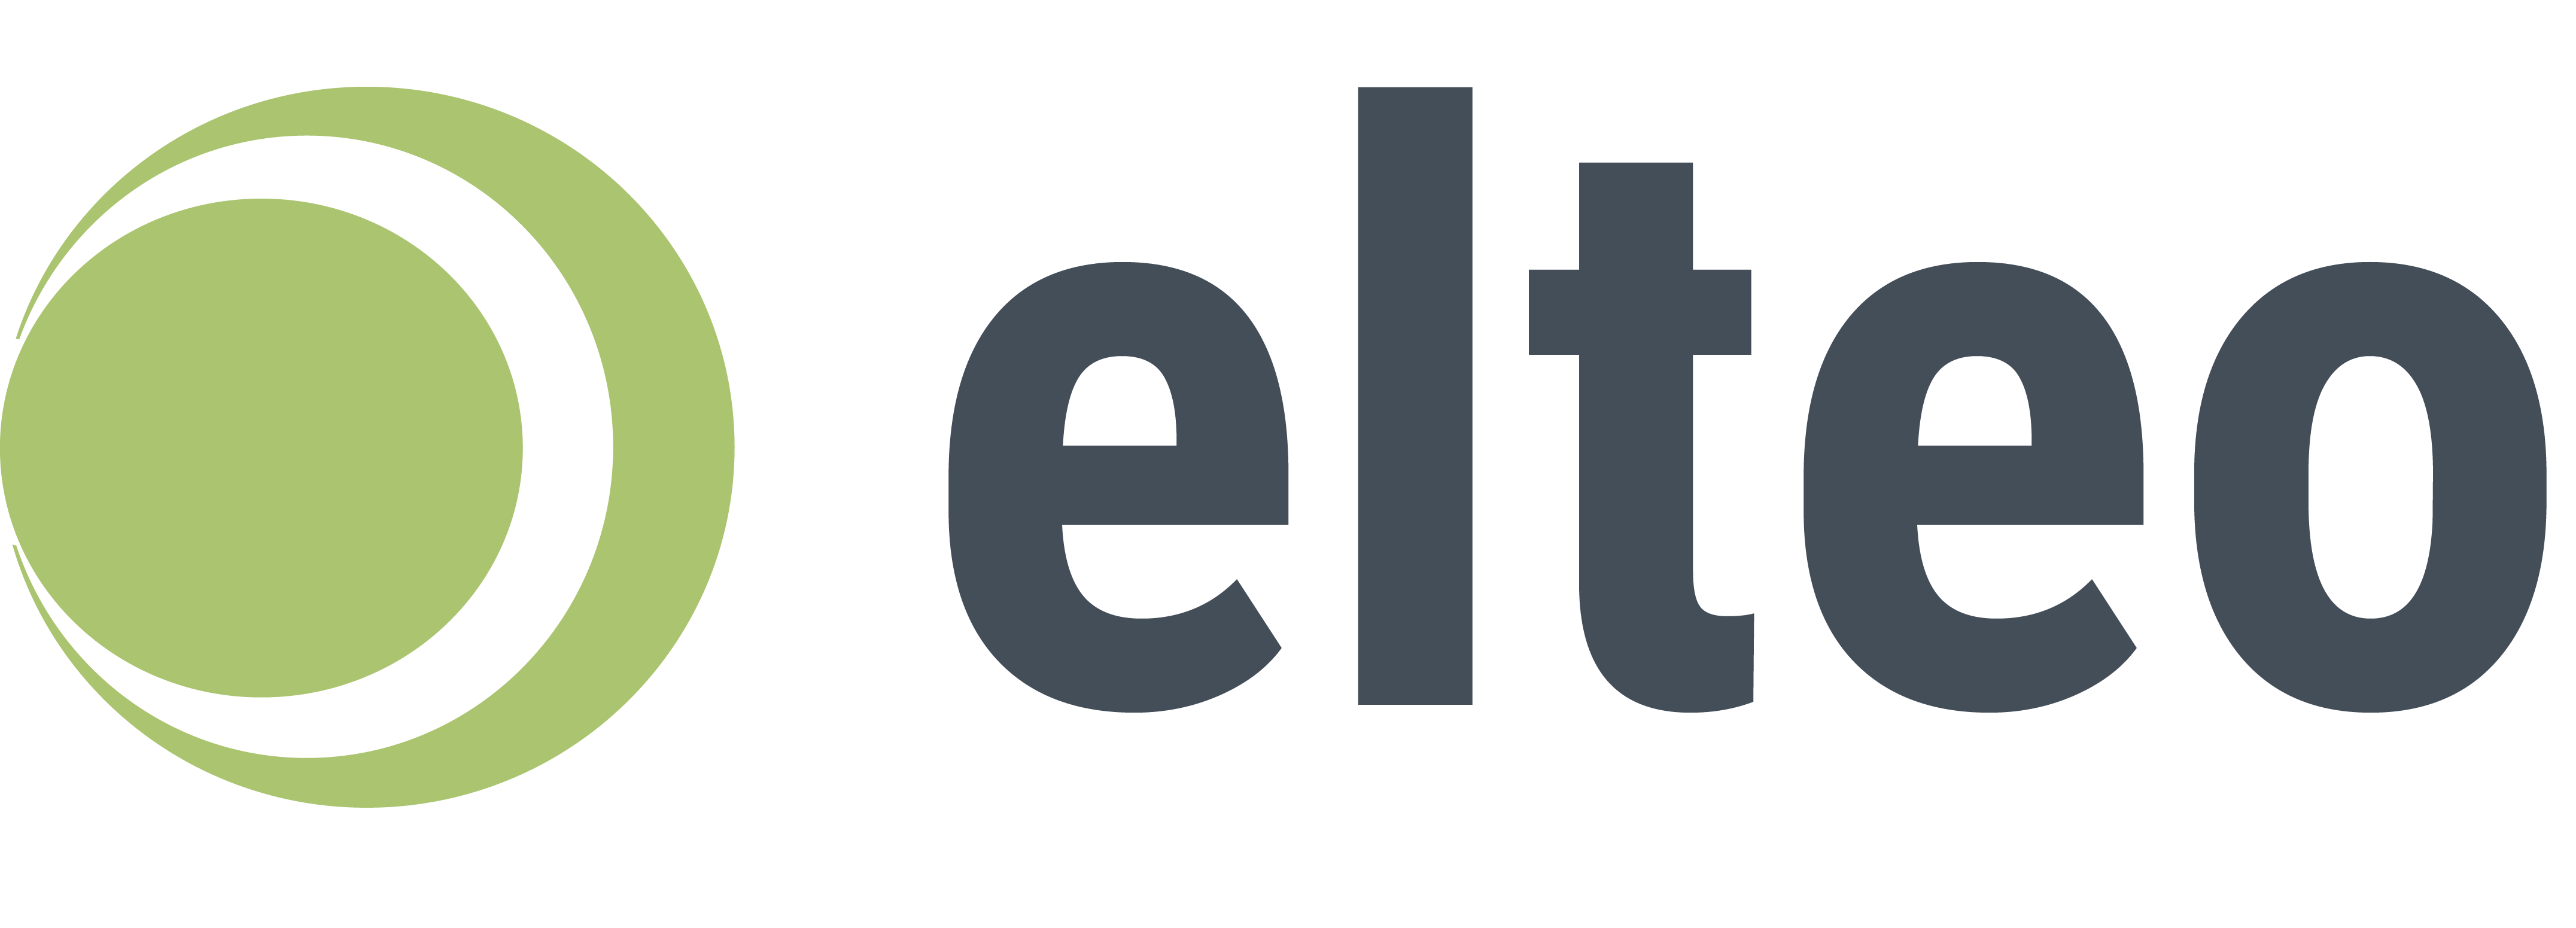 Das Logo der Firma elteo. Das Unternehmen setzt auf die Check-it App.